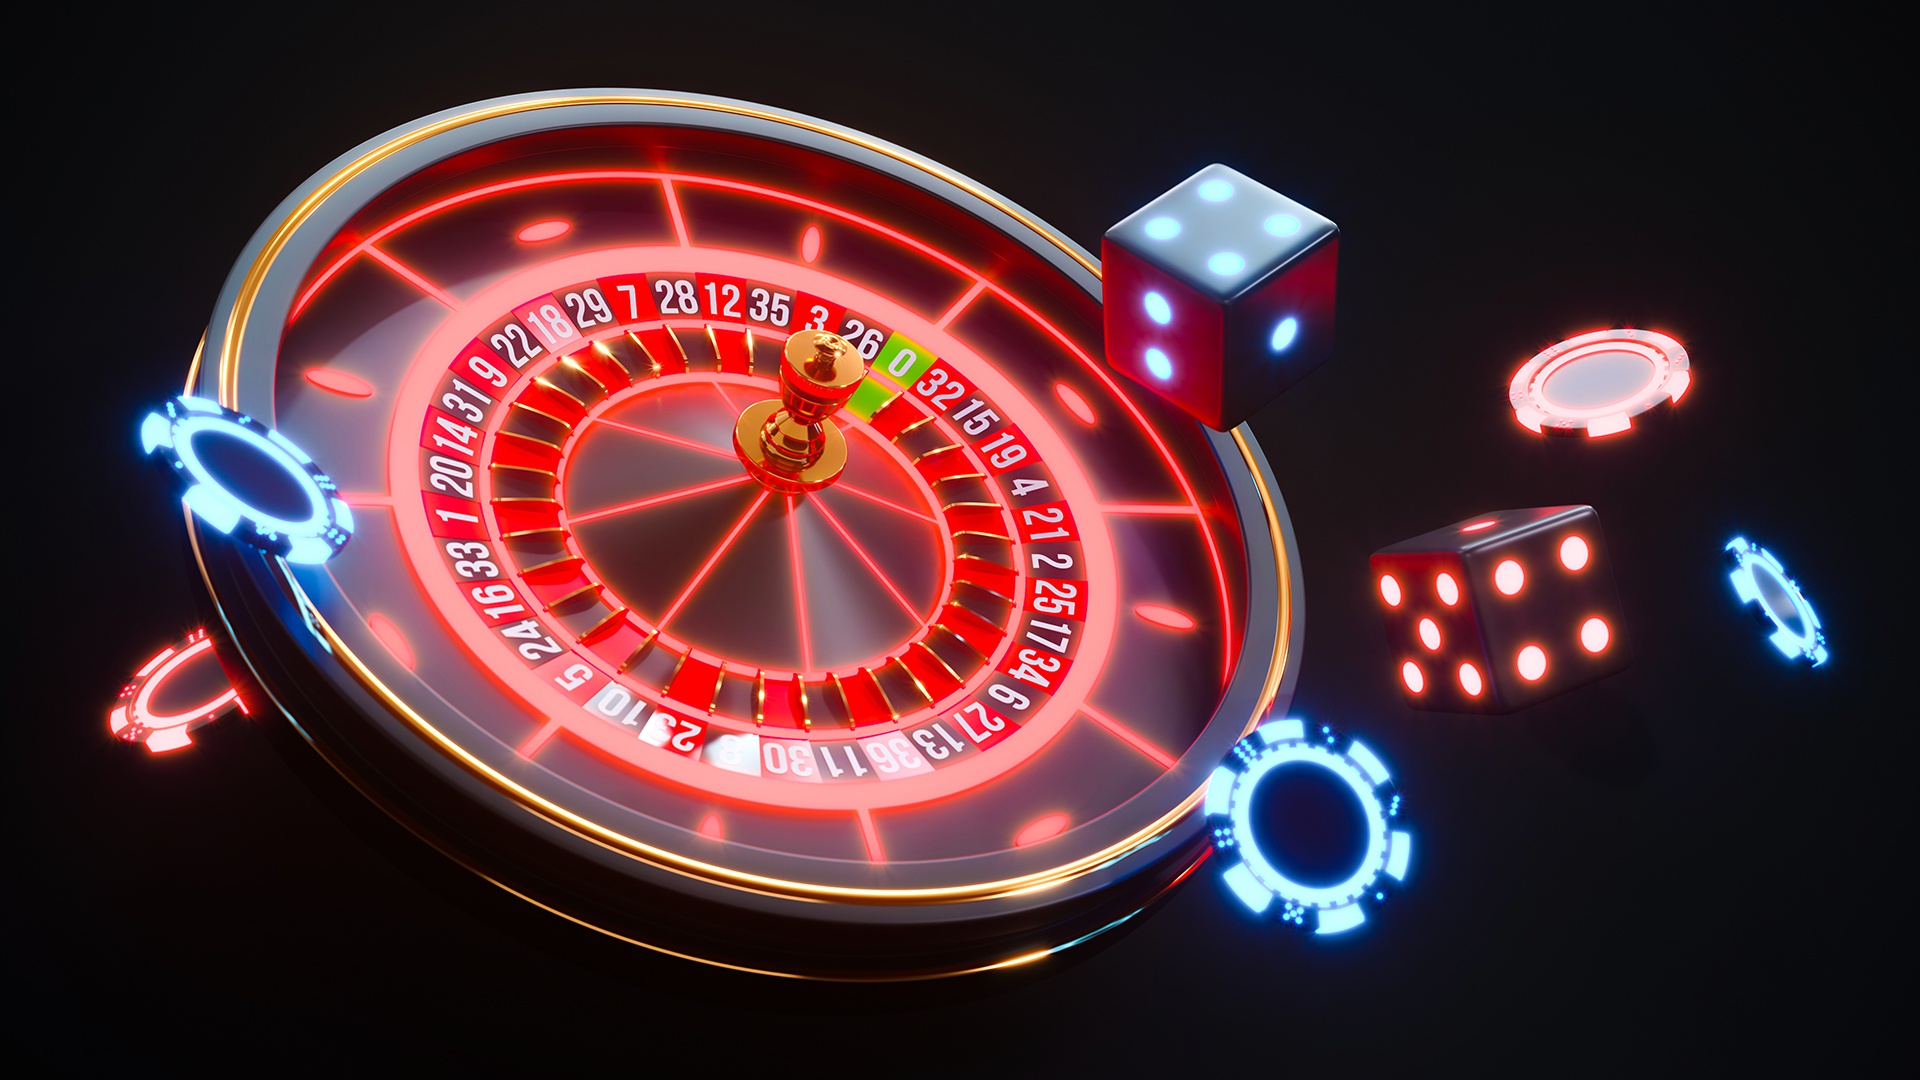 азартные игры в онлайн казино